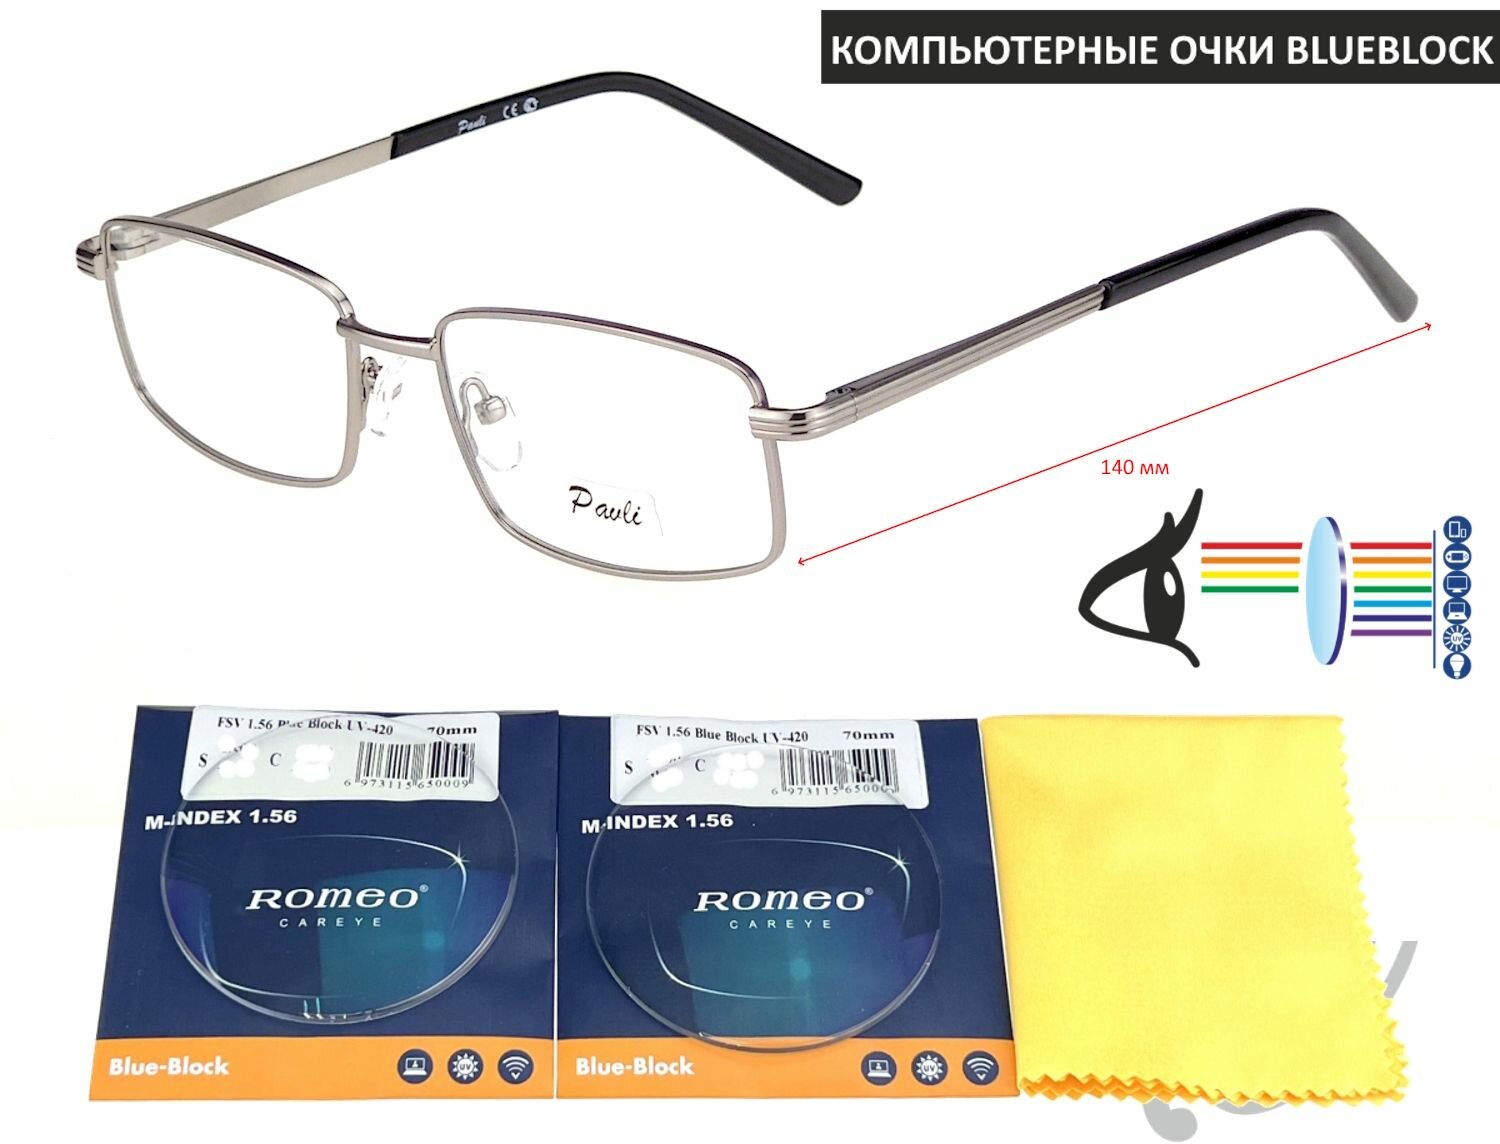 Компьютерные очки PAVLI мод. 11070 Цвет 3 с линзами ROMEO 1.56 Blue Block -3.50 РЦ 62-64